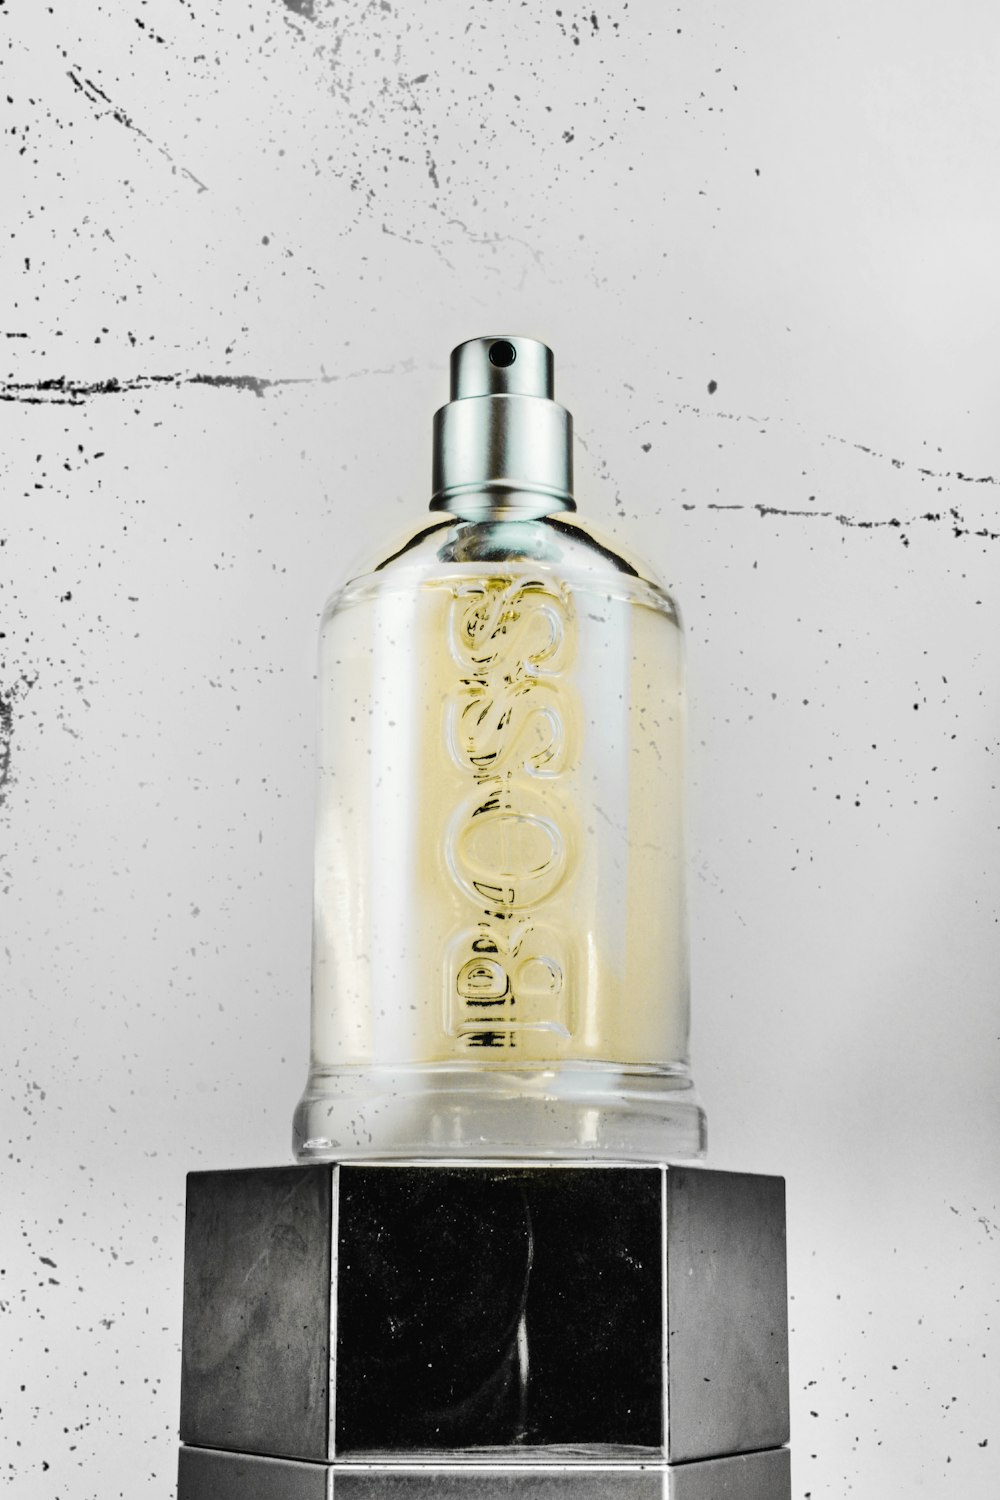 gold and black perfume bottle photo – Free Bottle Image on Unsplash